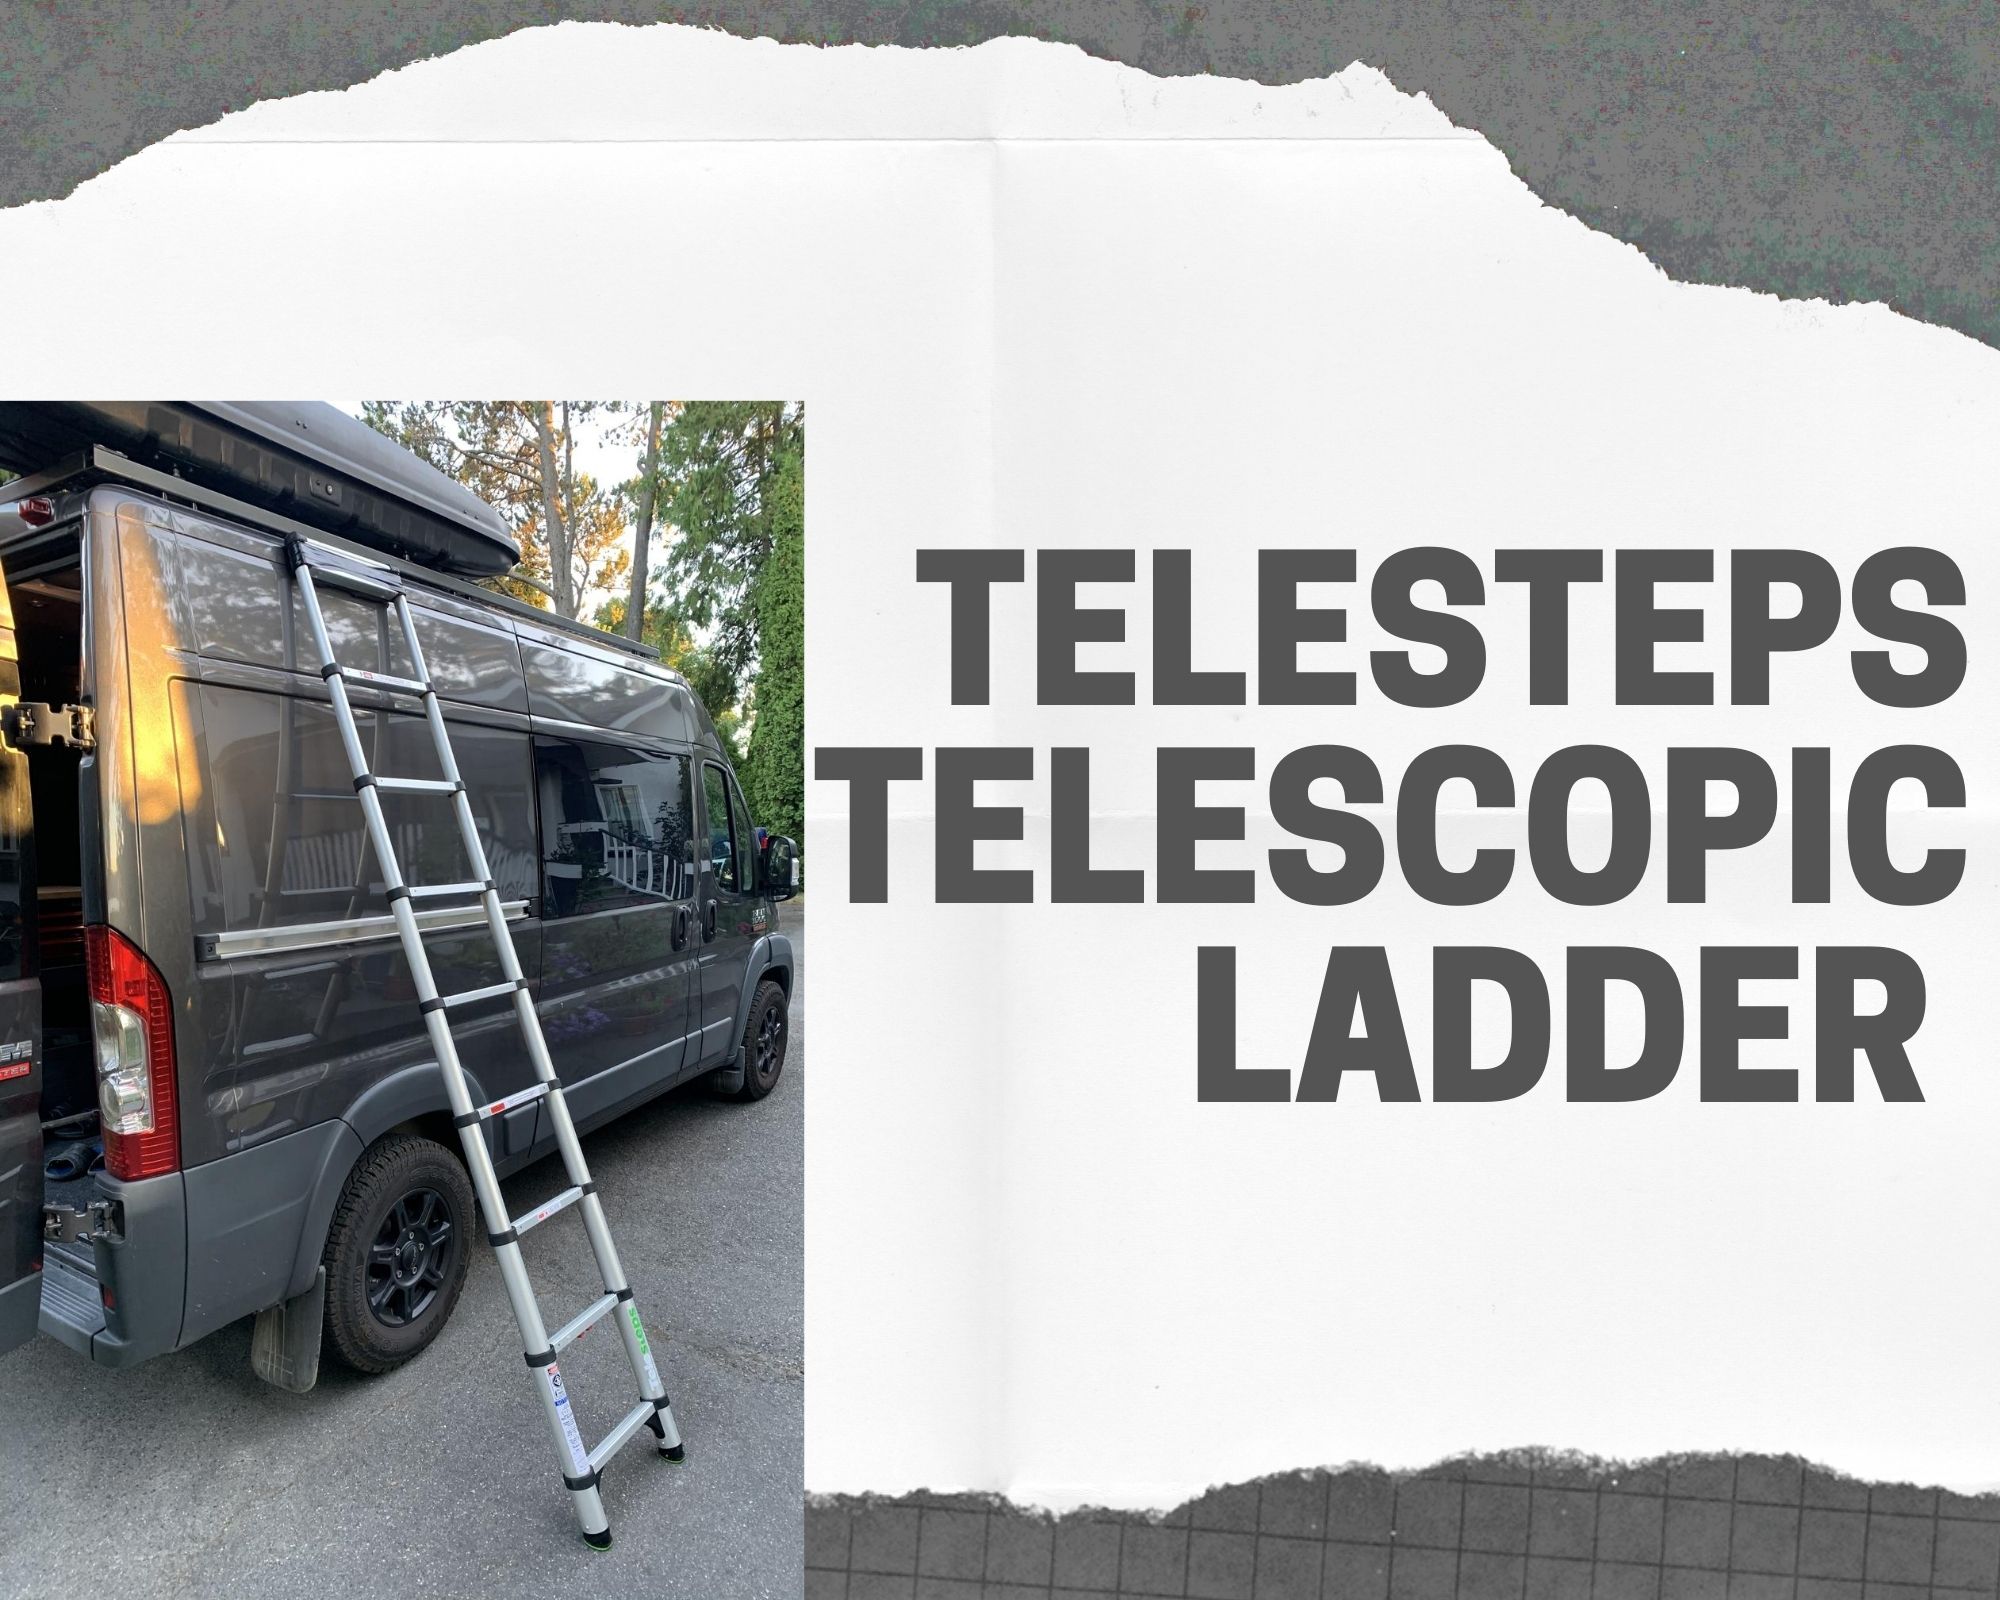 https://weekendervanlife.com/wp-content/uploads/2020/08/Telescopic-Van-Ladder.jpg